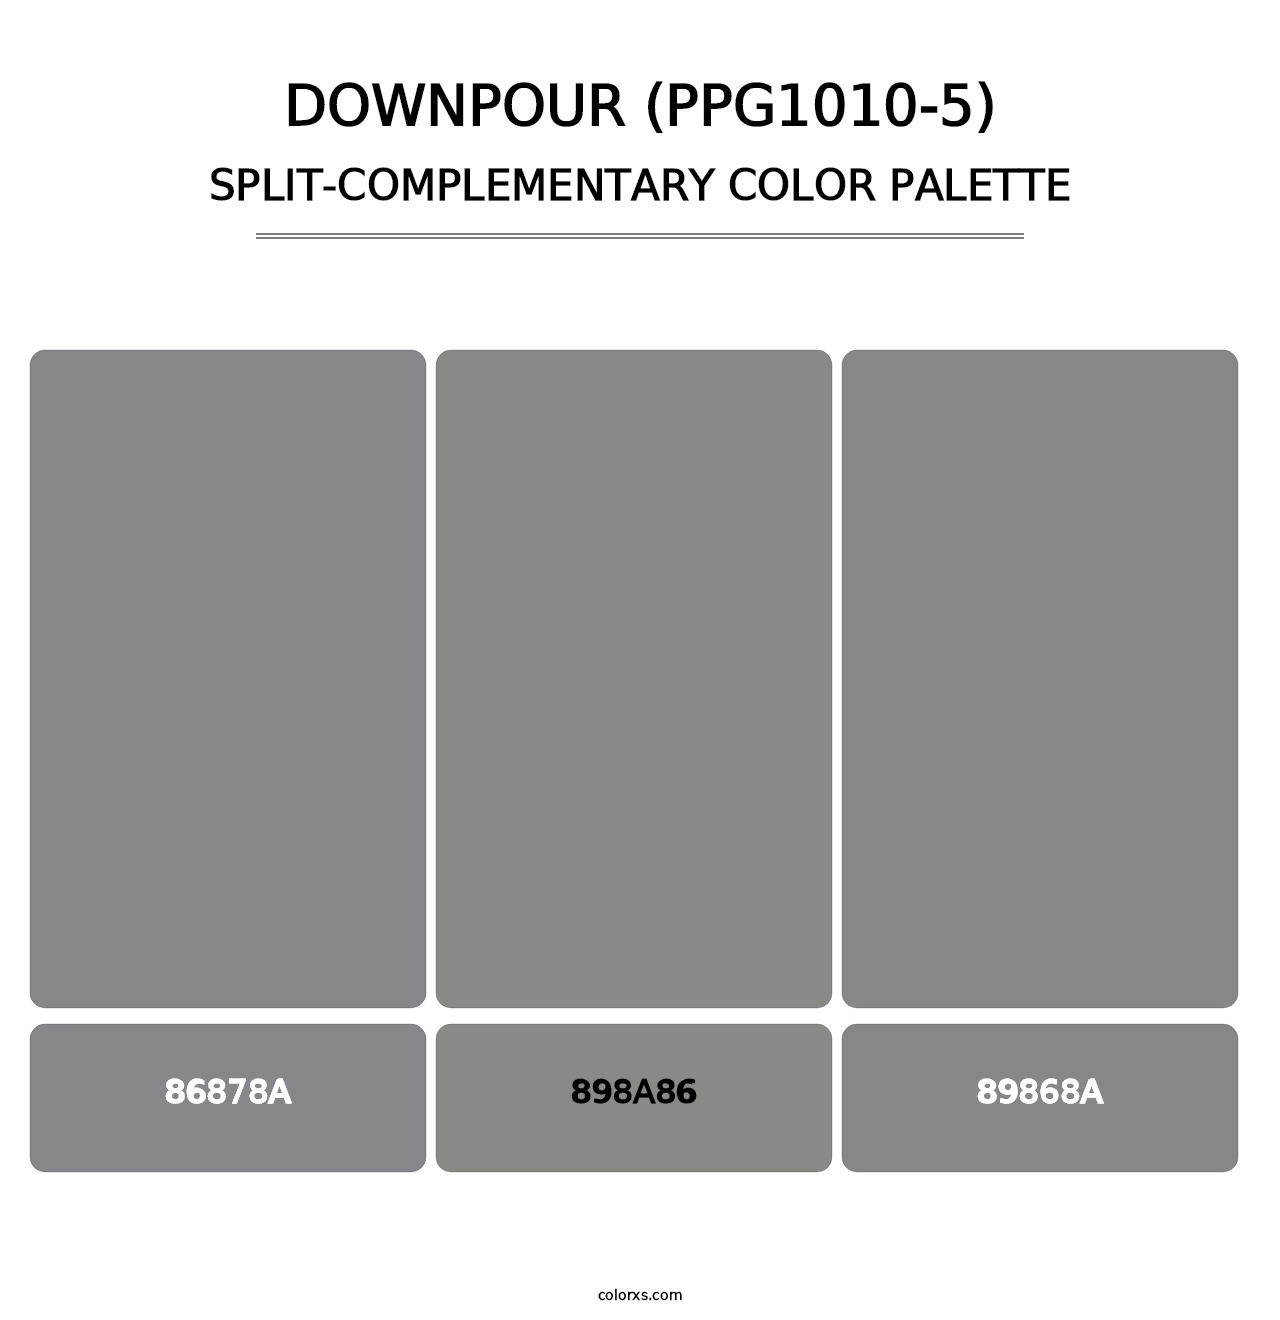 Downpour (PPG1010-5) - Split-Complementary Color Palette